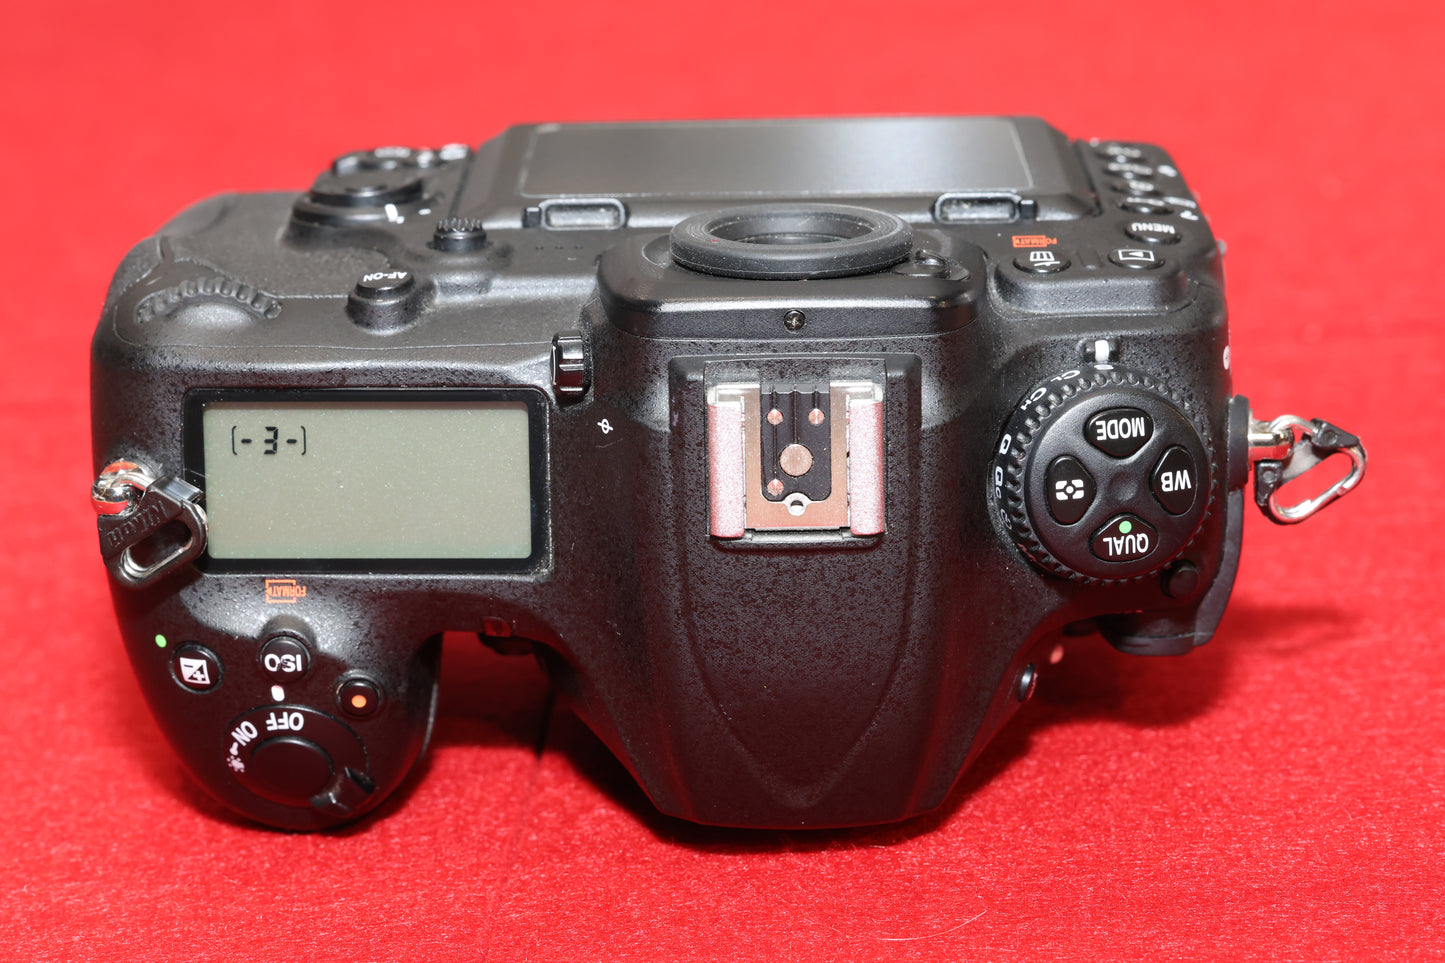 Gebrauchtware - Nikon D500 Spiegelreflexkamera OVP